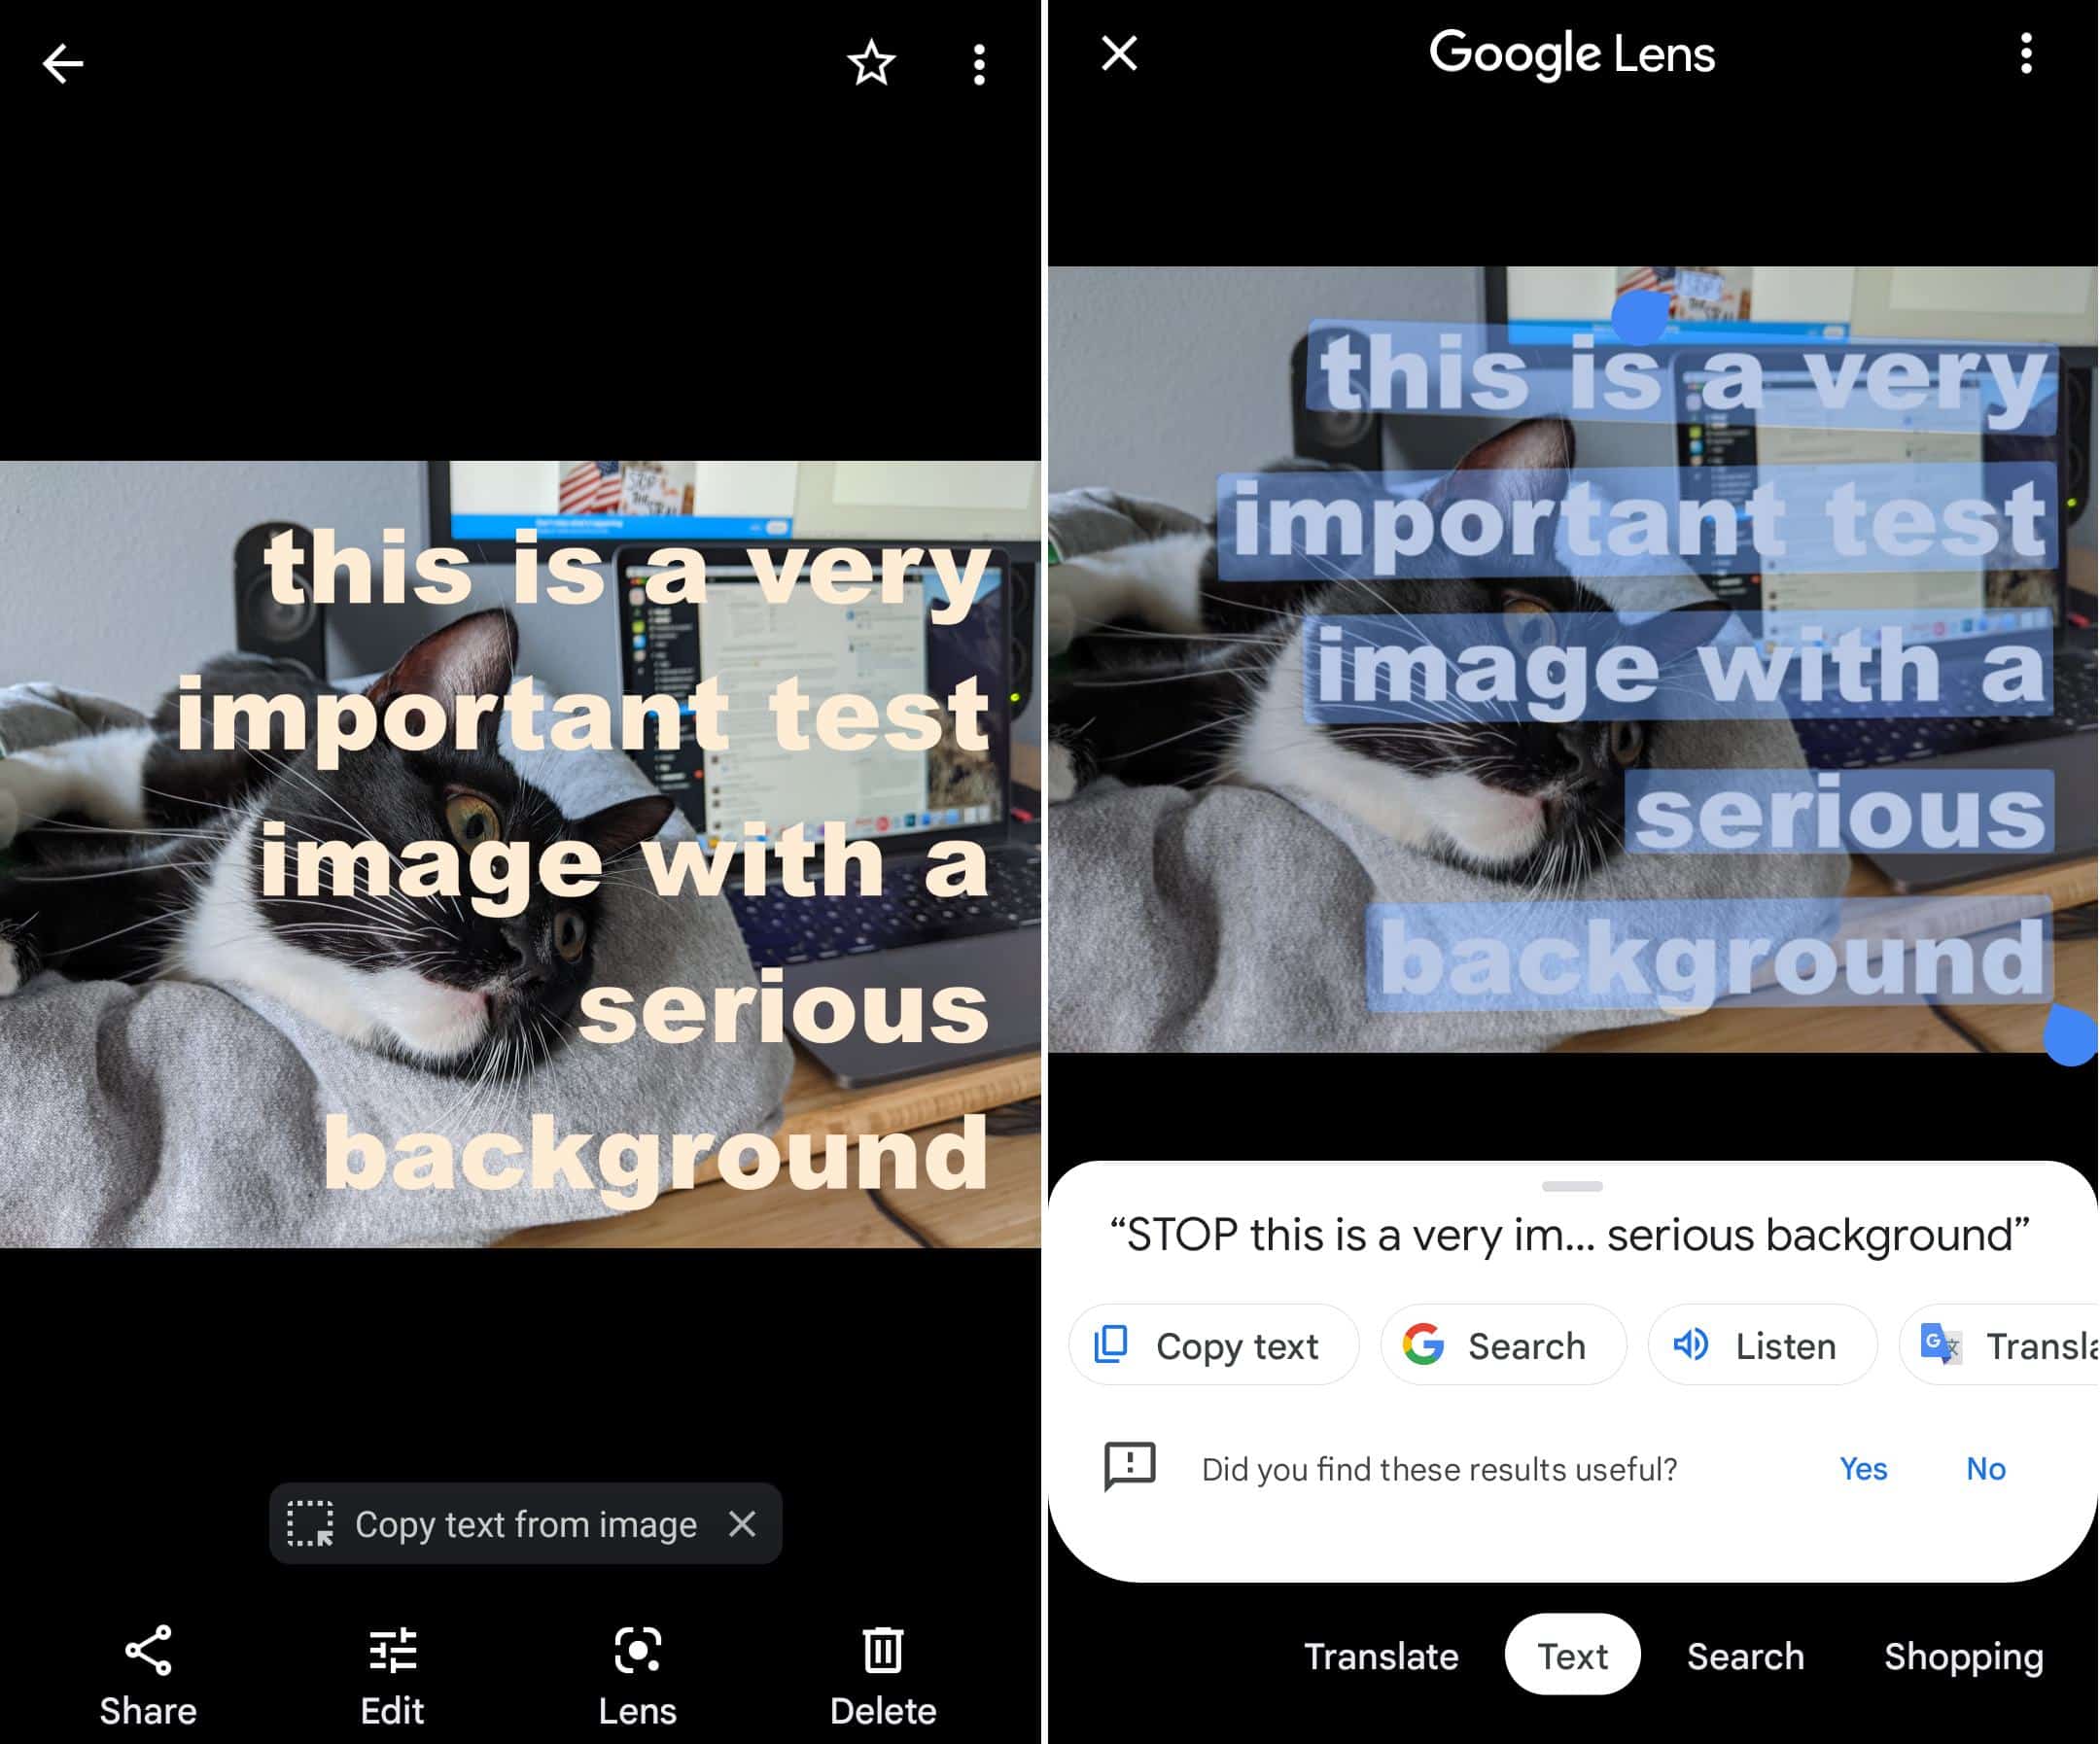 يستطيع مستخدمو نظام أندرويد استعمال تطبيق جوجل لينز لاستخراج النصوص من الصور. جاستن بوت